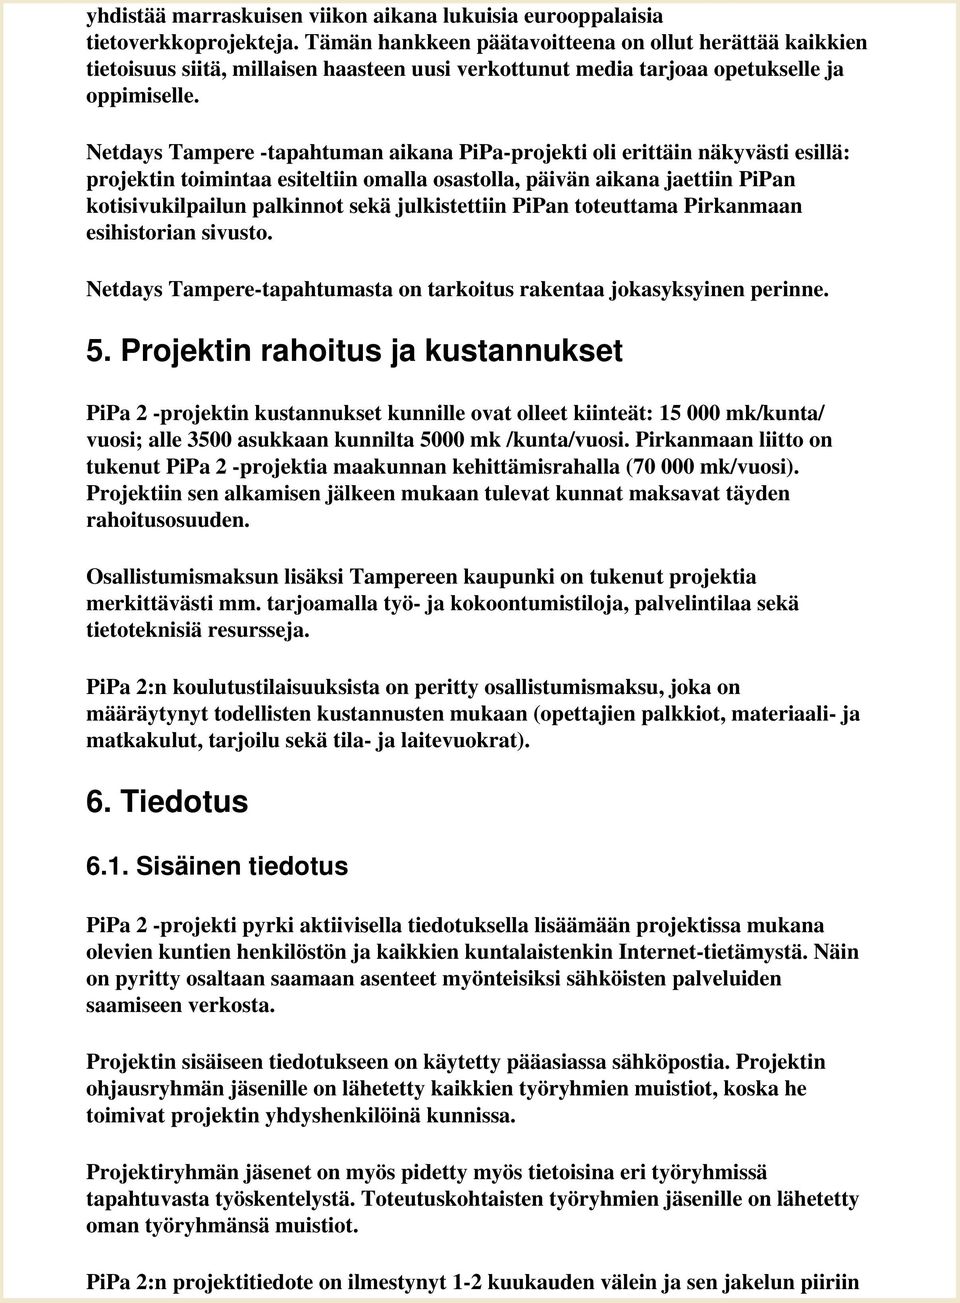 Netdays Tampere -tapahtuman aikana PiPa-projekti oli erittäin näkyvästi esillä: projektin toimintaa esiteltiin omalla osastolla, päivän aikana jaettiin PiPan kotisivukilpailun palkinnot sekä